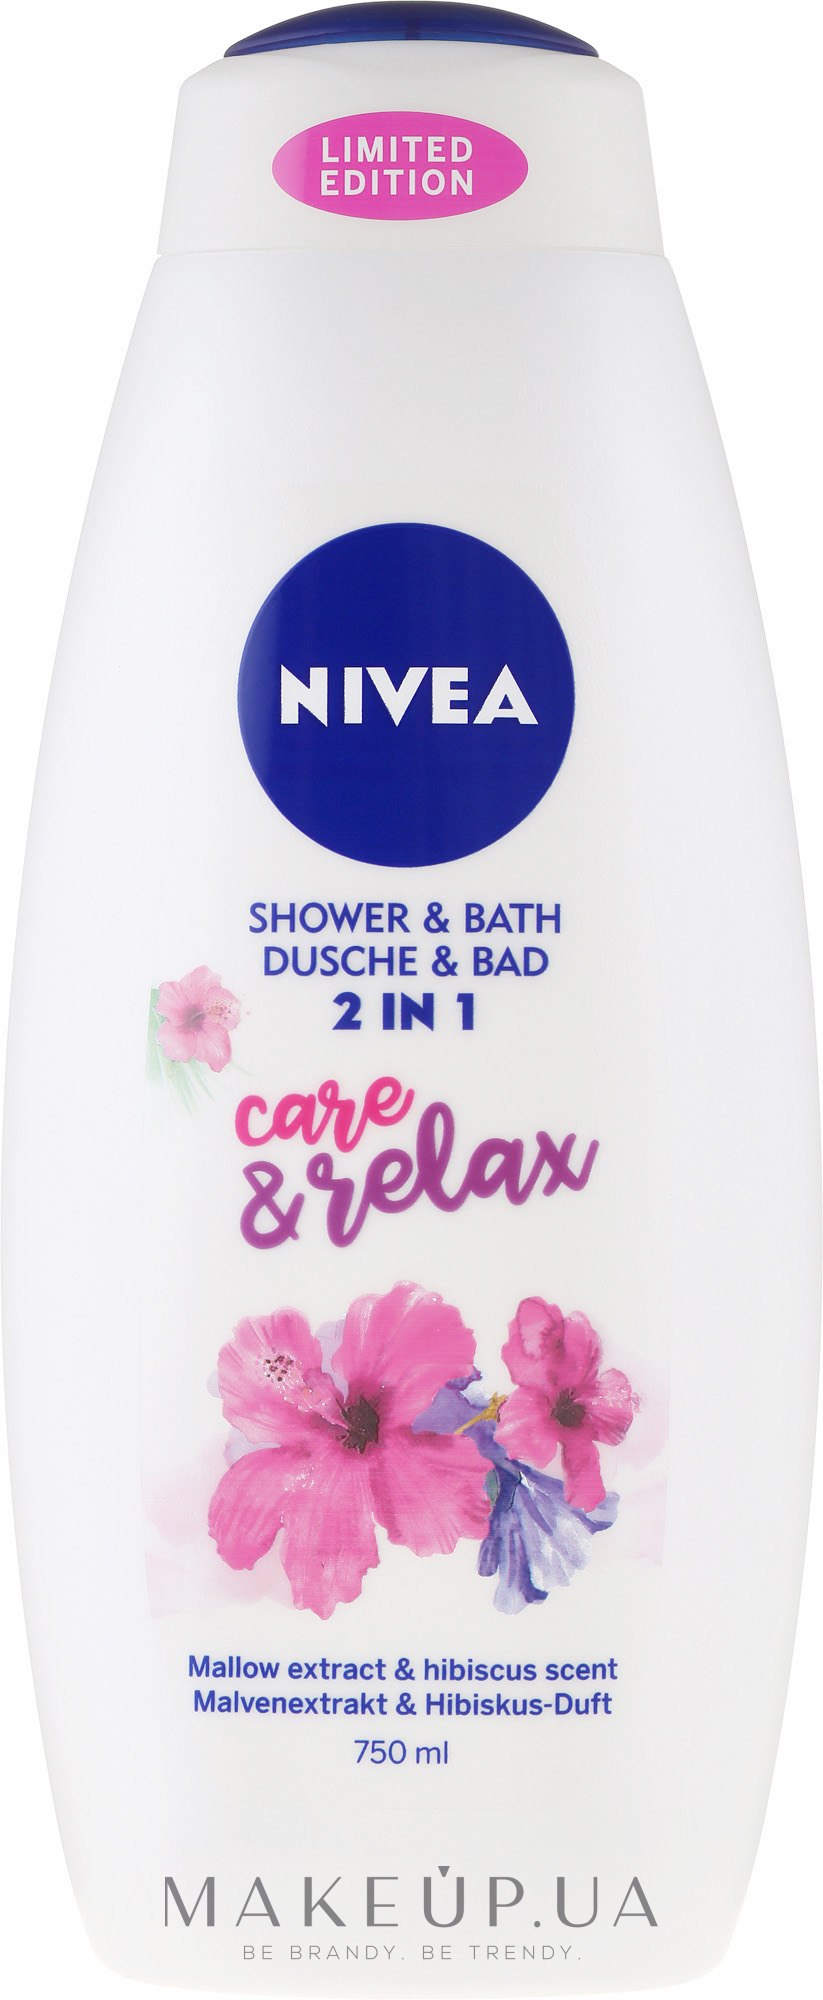 Гель для душа 2 в 1 - NIVEA Shower & Bath Care & Relax — фото 750ml